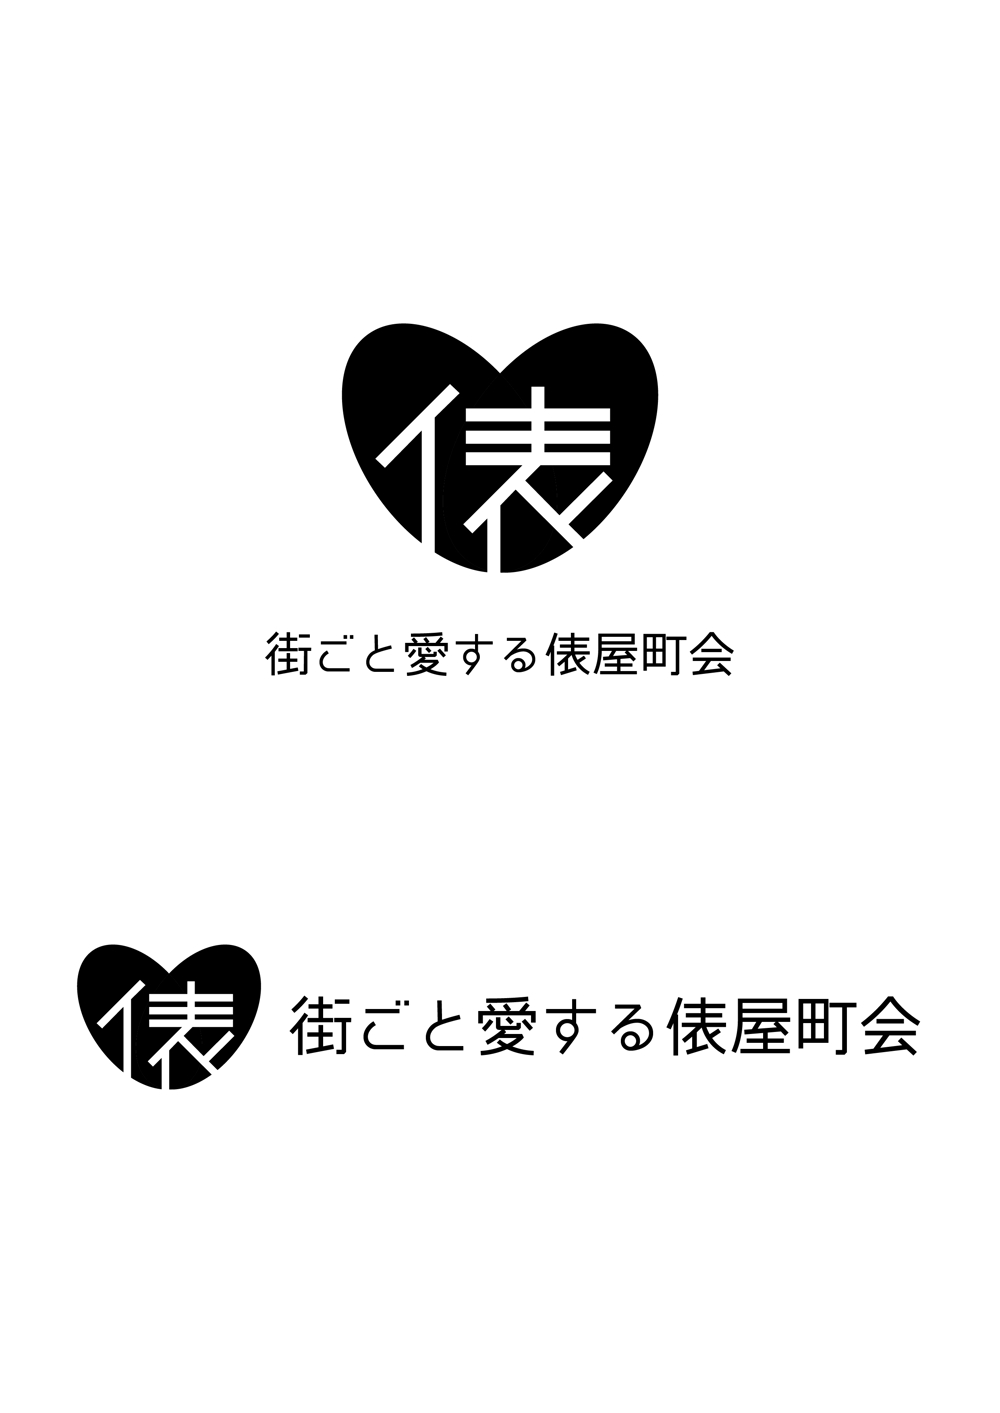 【街ごと愛する俵屋町会】のロゴの制作